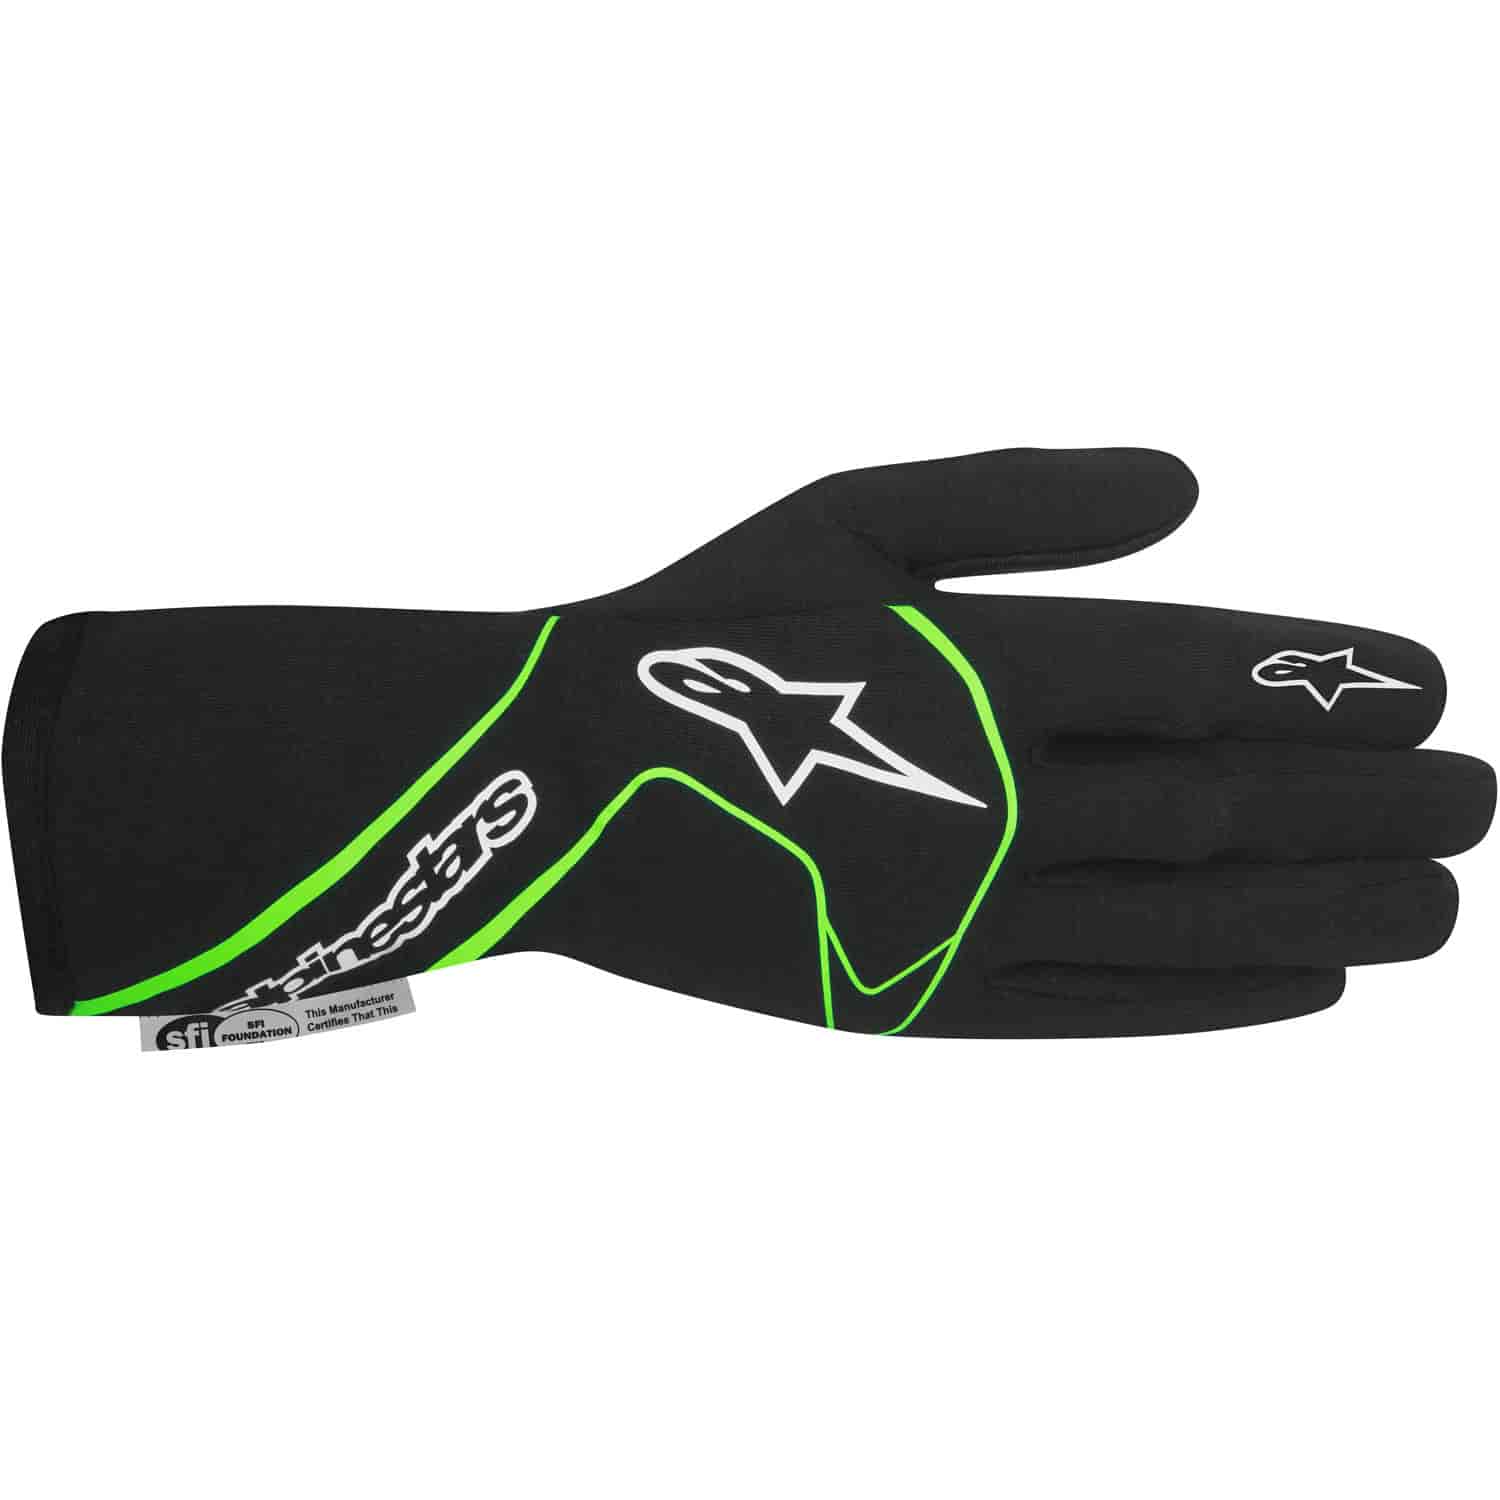 Tech 1 Race Gloves Black/Green Fluorescent SFI 3.3/5